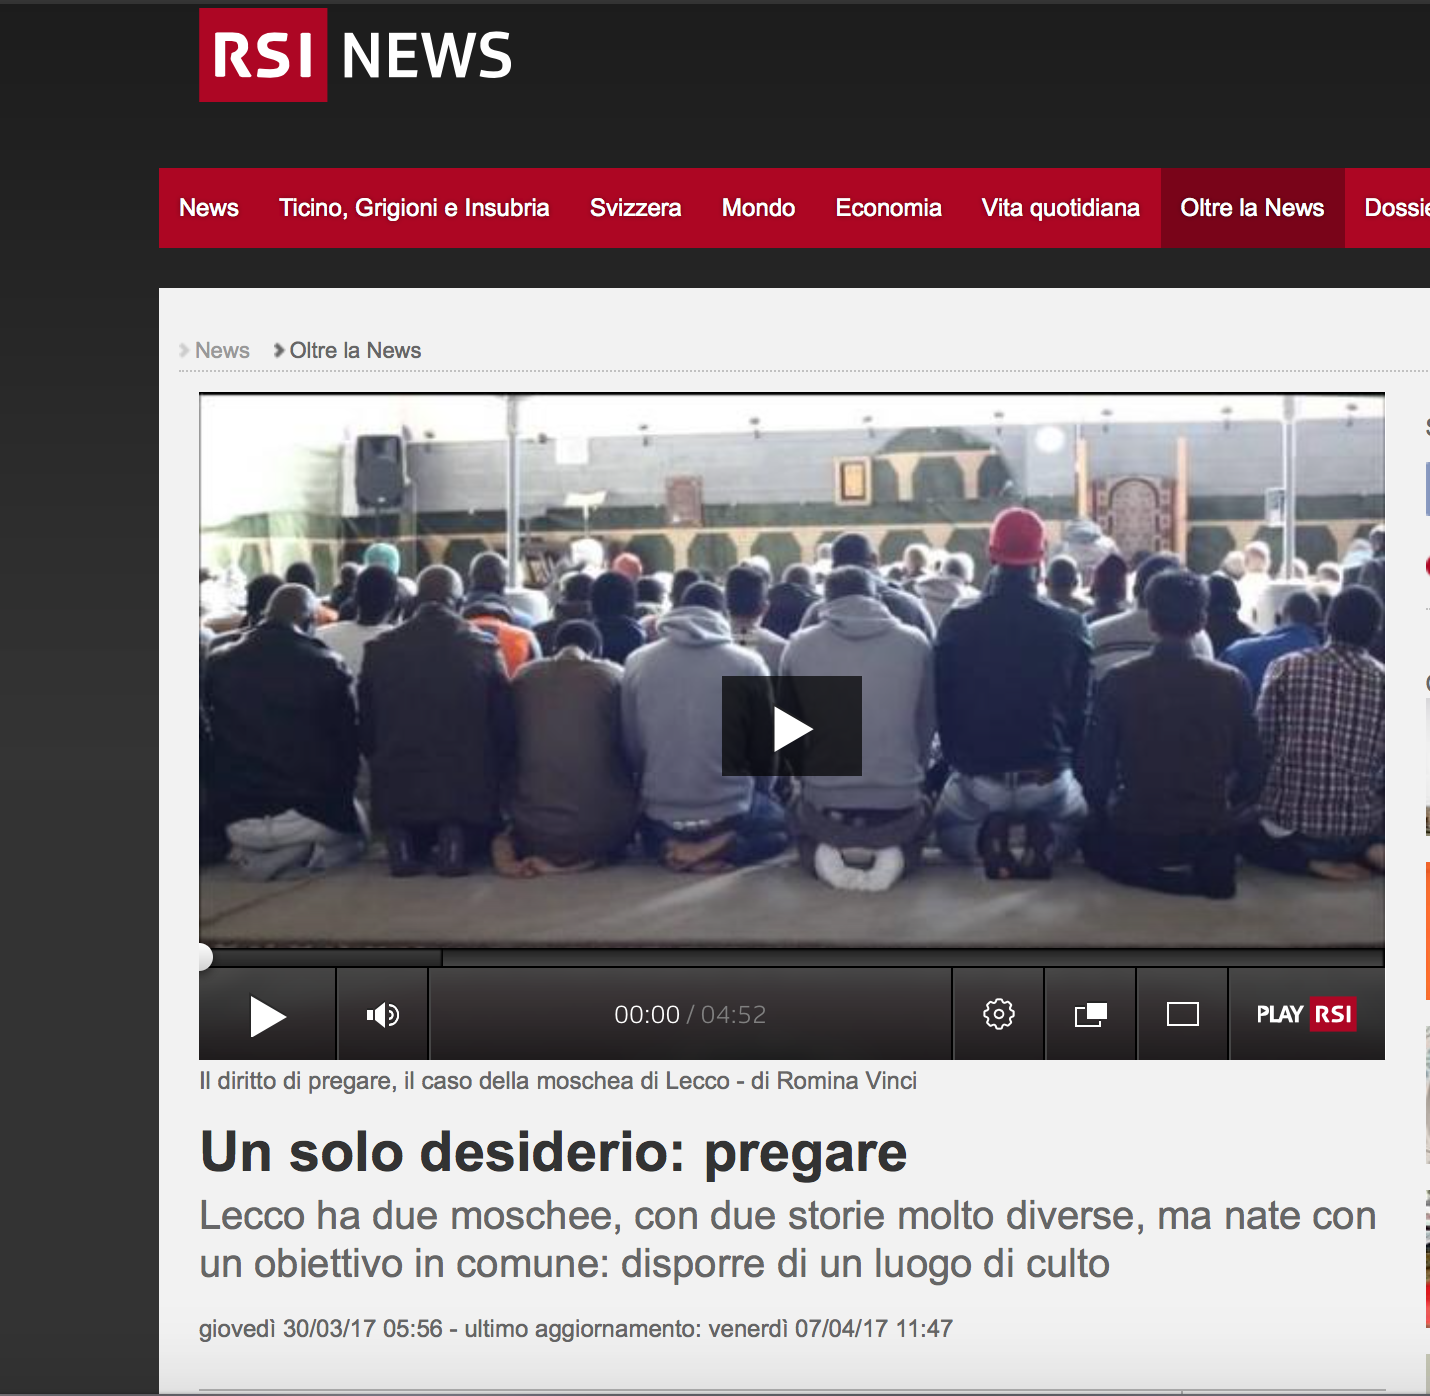  RSI - Radio Televisione Svizzera - March 2017